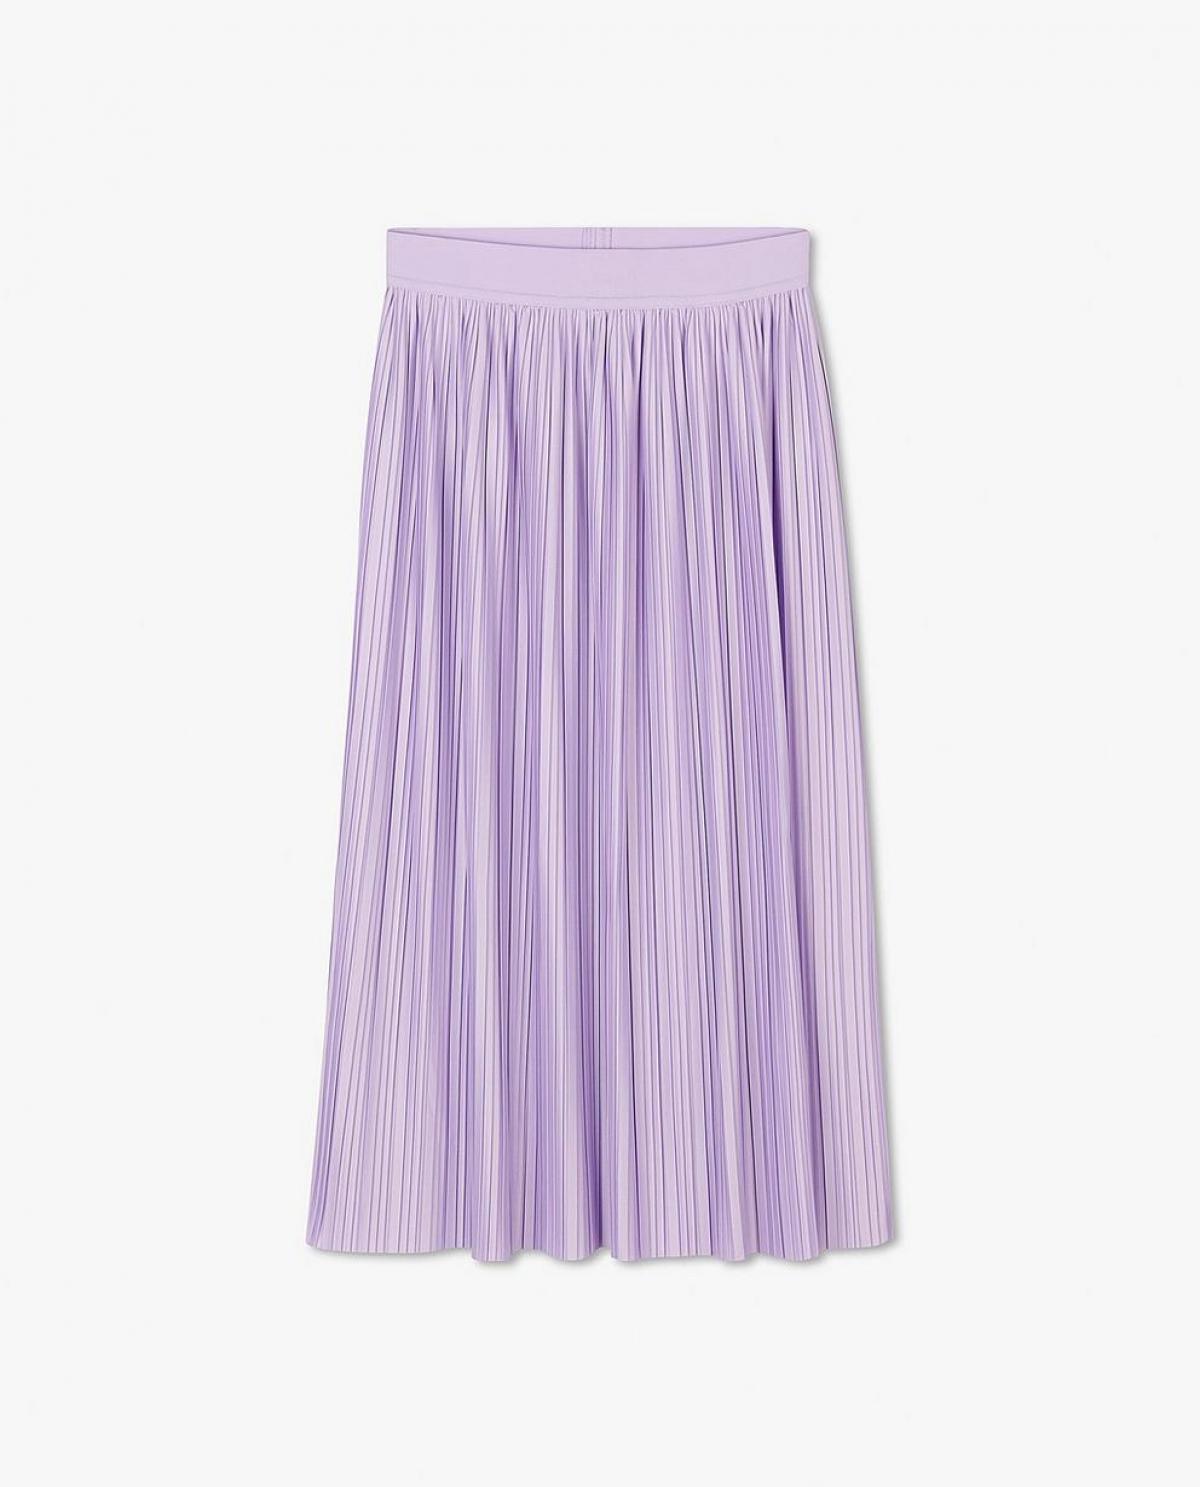 La jupe plissée lilas